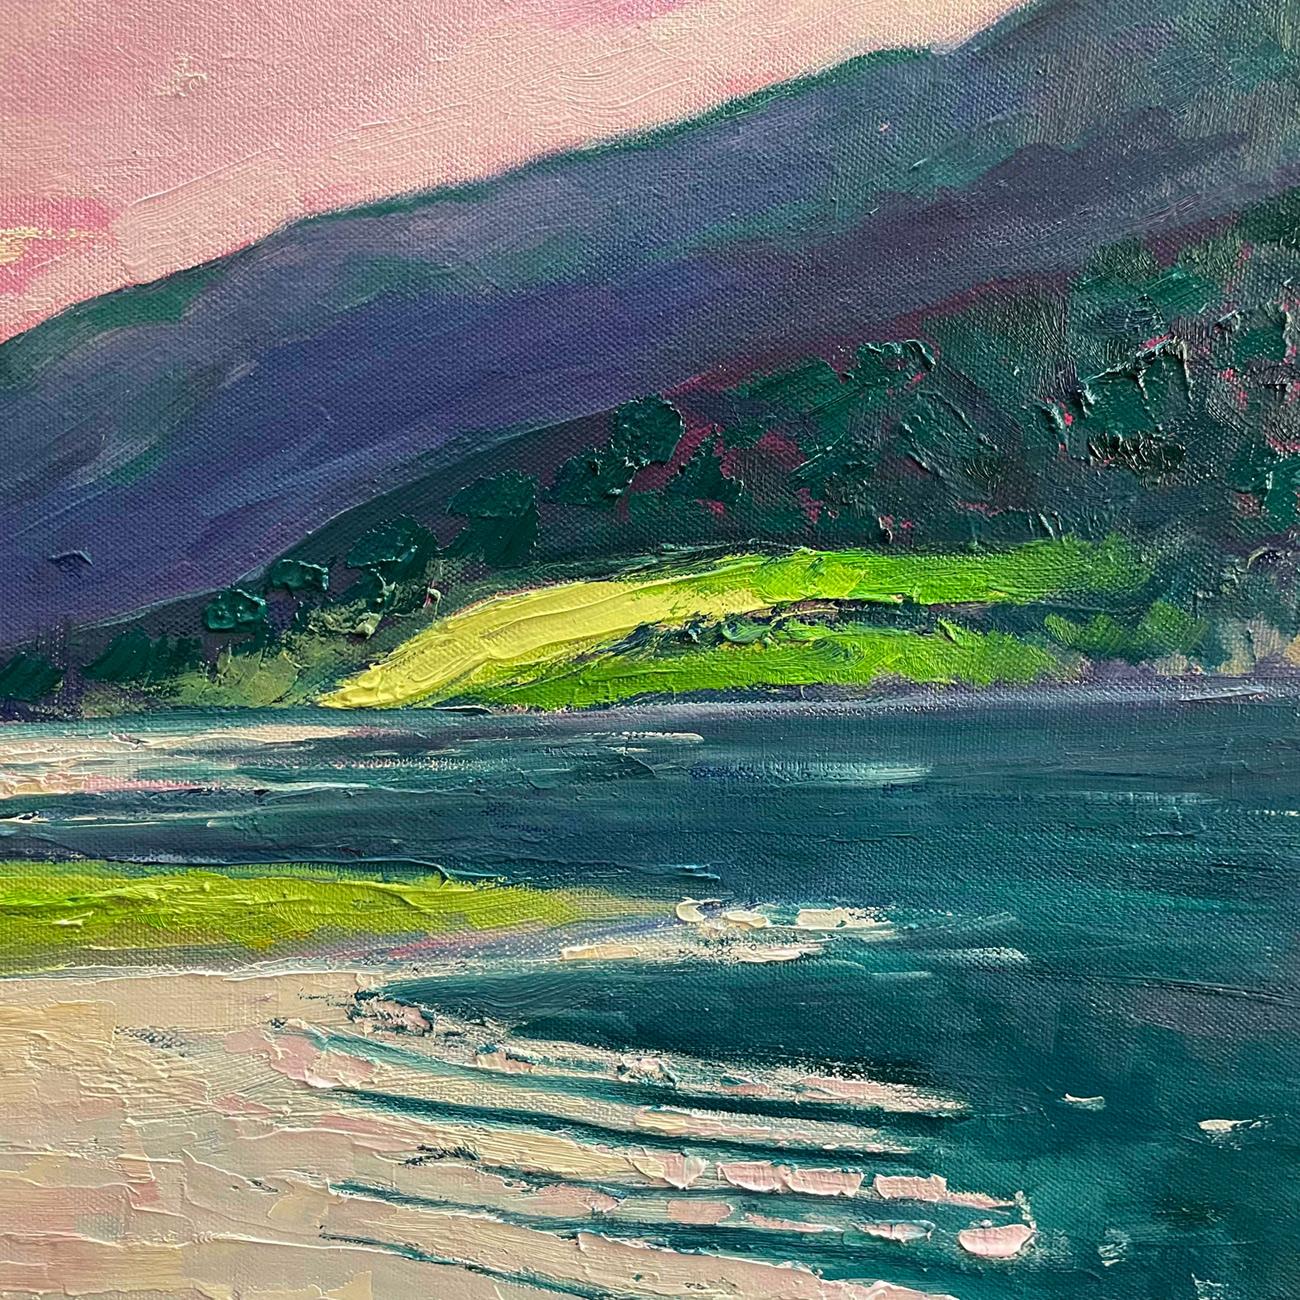 Glencoe Dusk ist ein Original-Ölgemälde von Eleanor Woolley. Das Gemälde zeigt ein Glencoe-Tal in der Abenddämmerung, wobei Loch Levan den Blick auf die dahinter liegenden Berge lenkt. Die untergehende Sonne und die dunkelrosa Wolken spiegeln sich